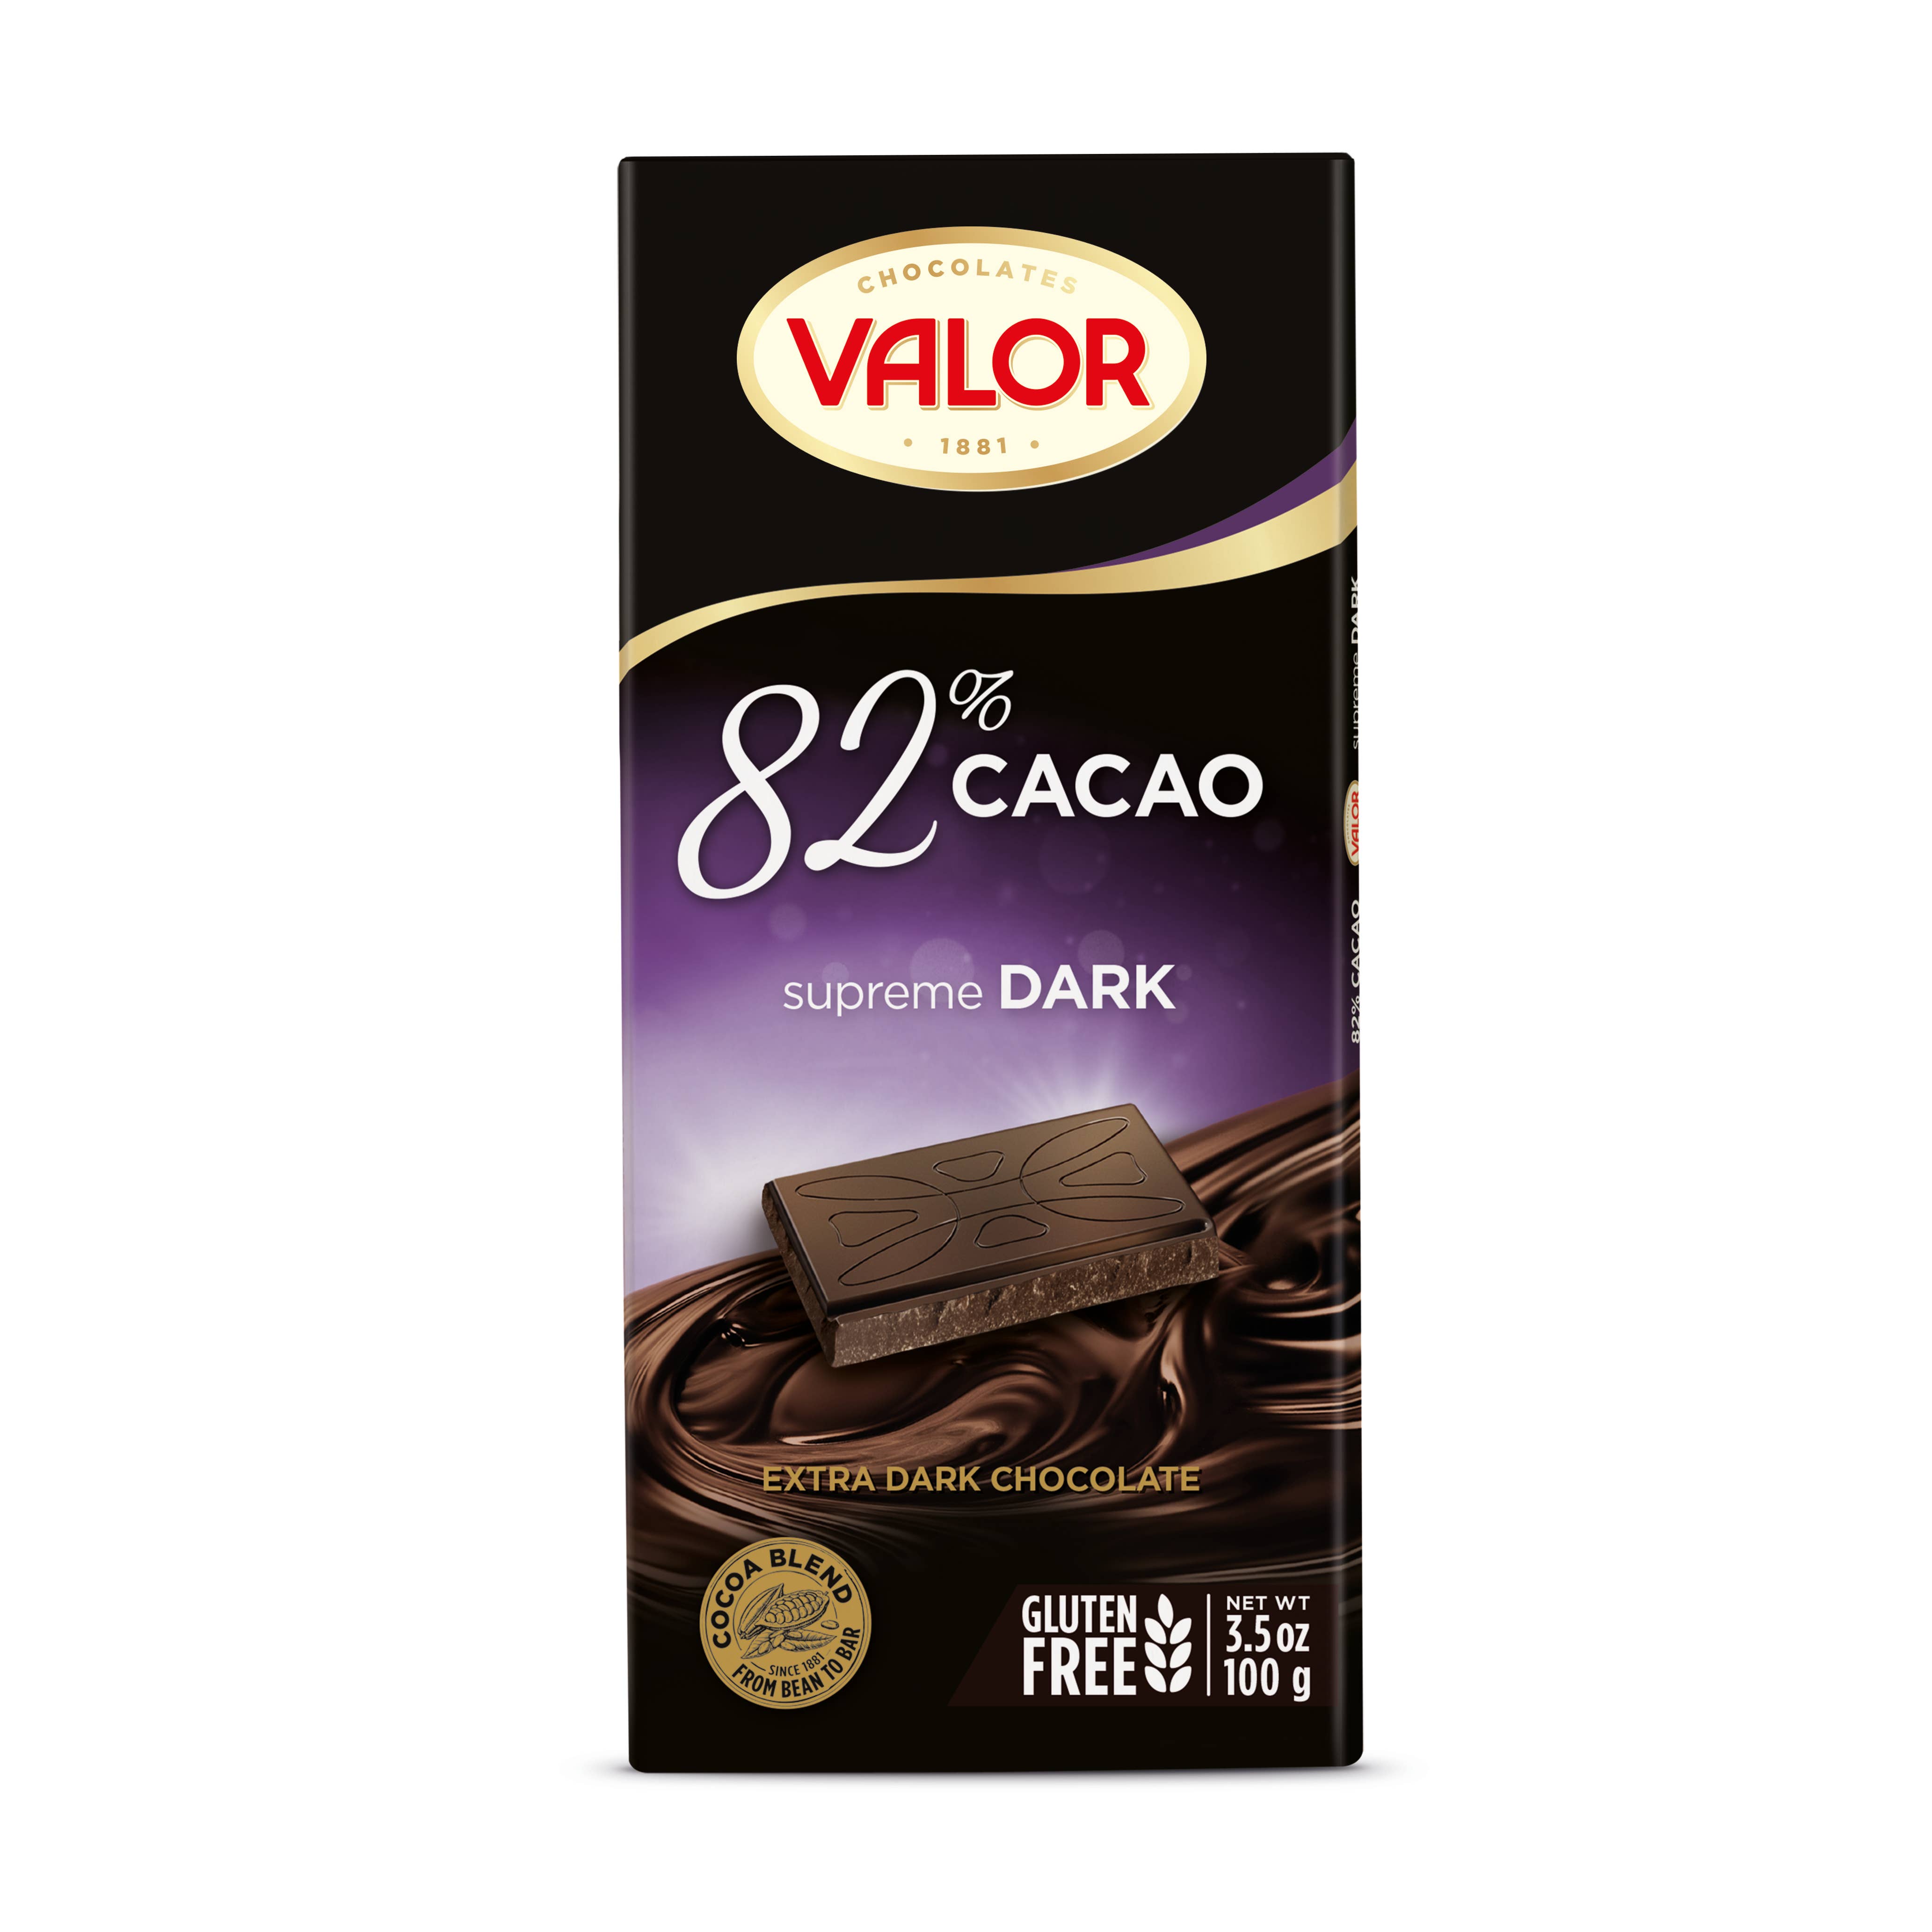 Chocolates Valor Engrosprodukter | Køb på med gratis returret